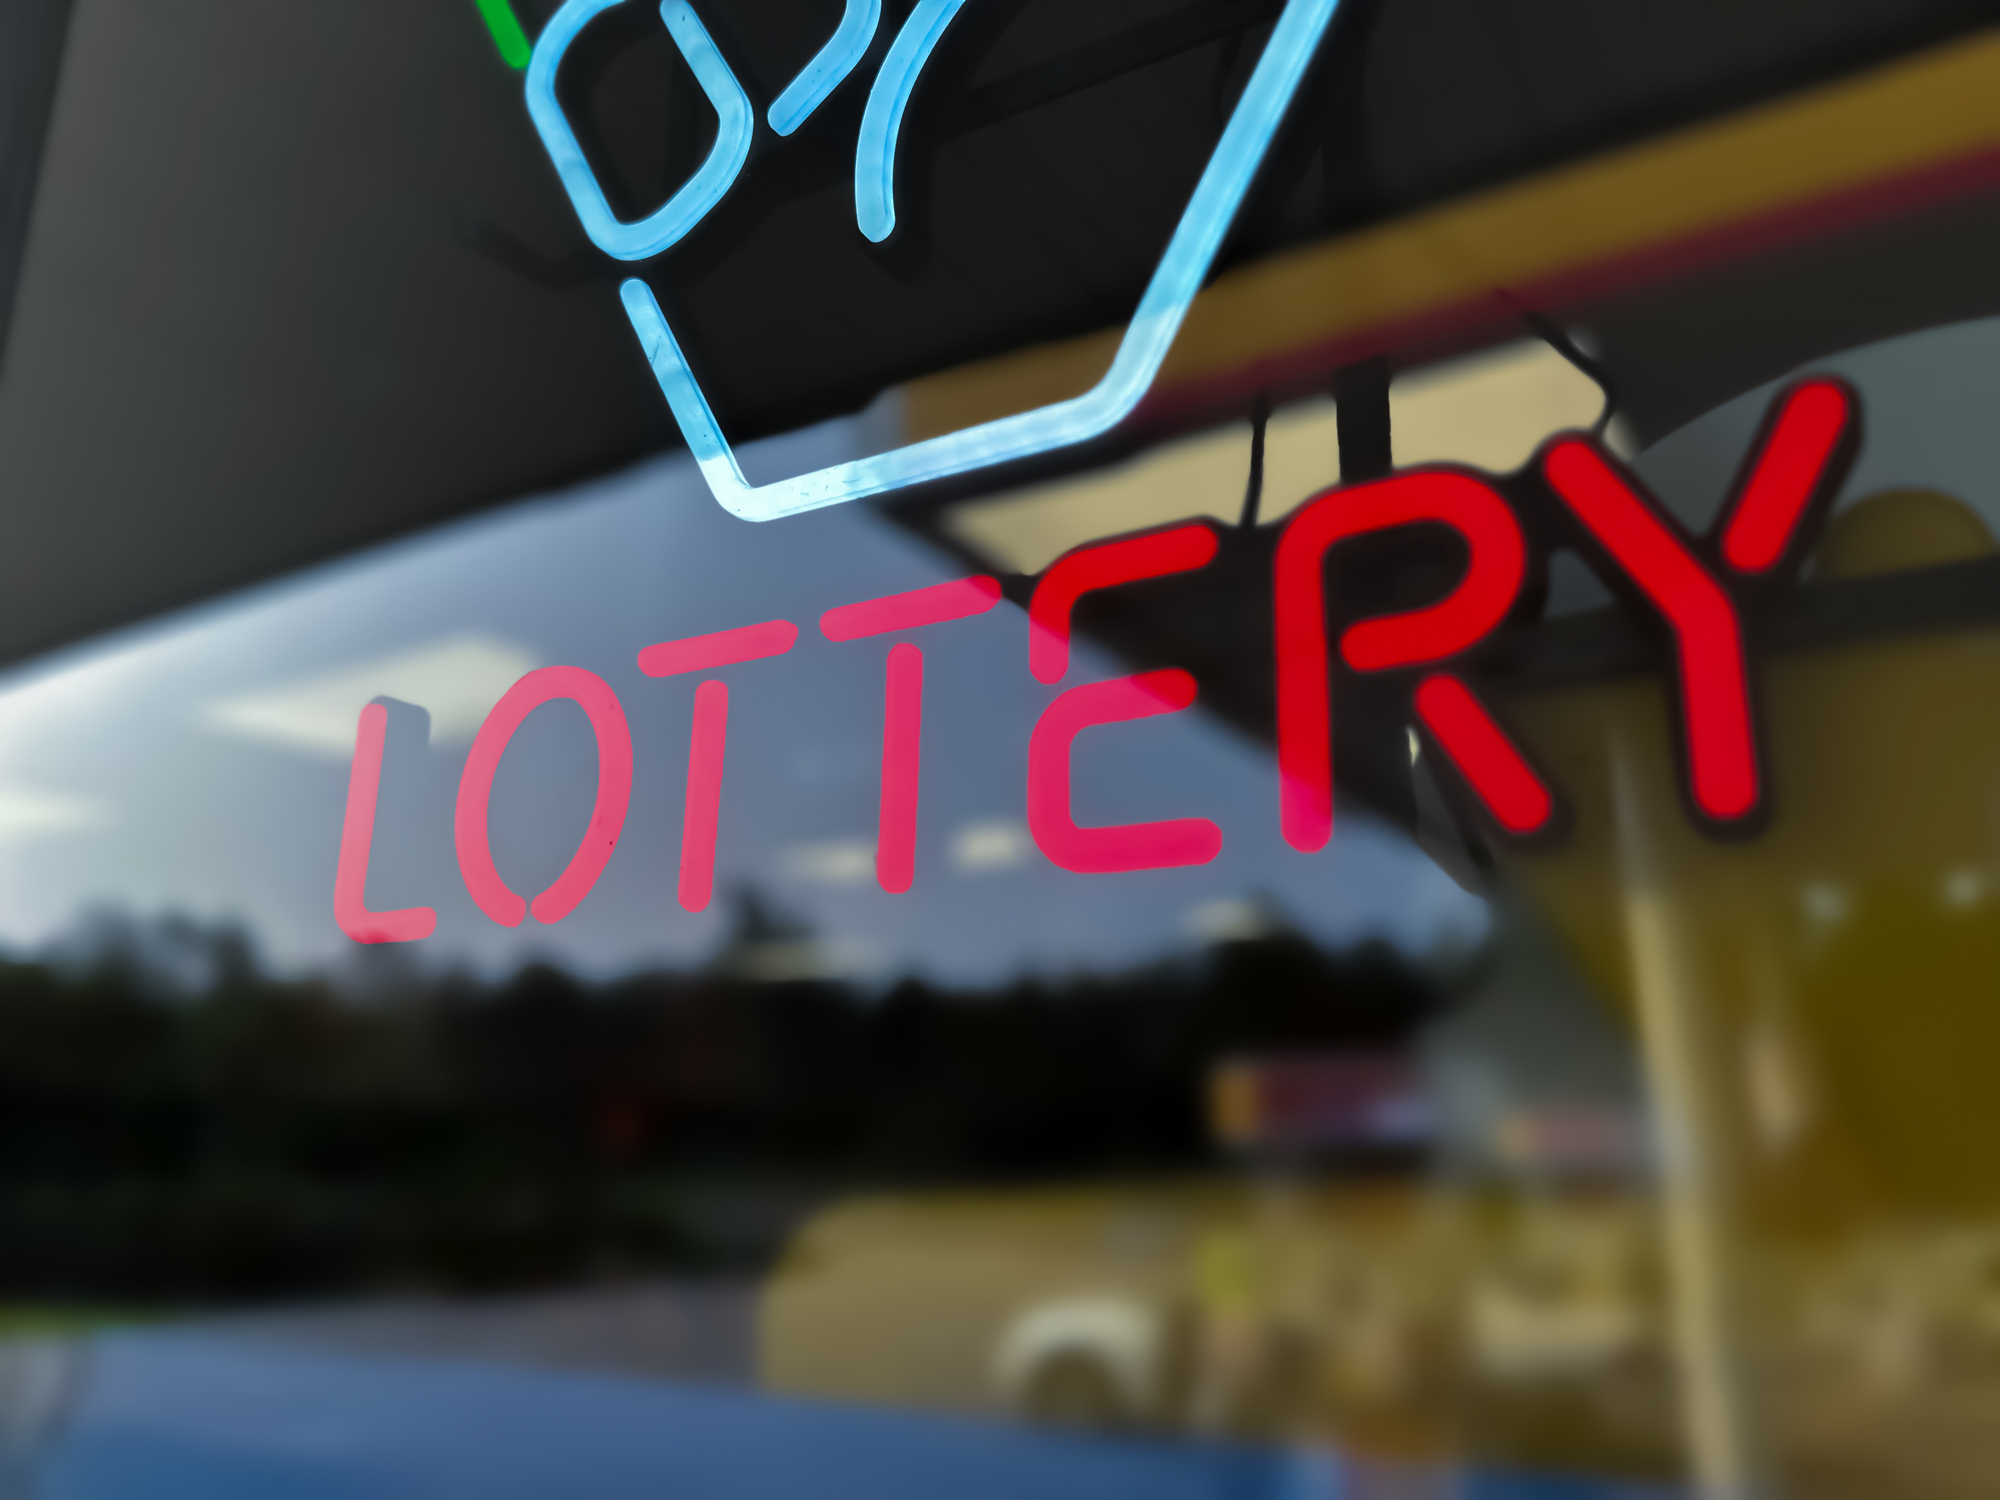 lottery mania: illuminated lottery sign